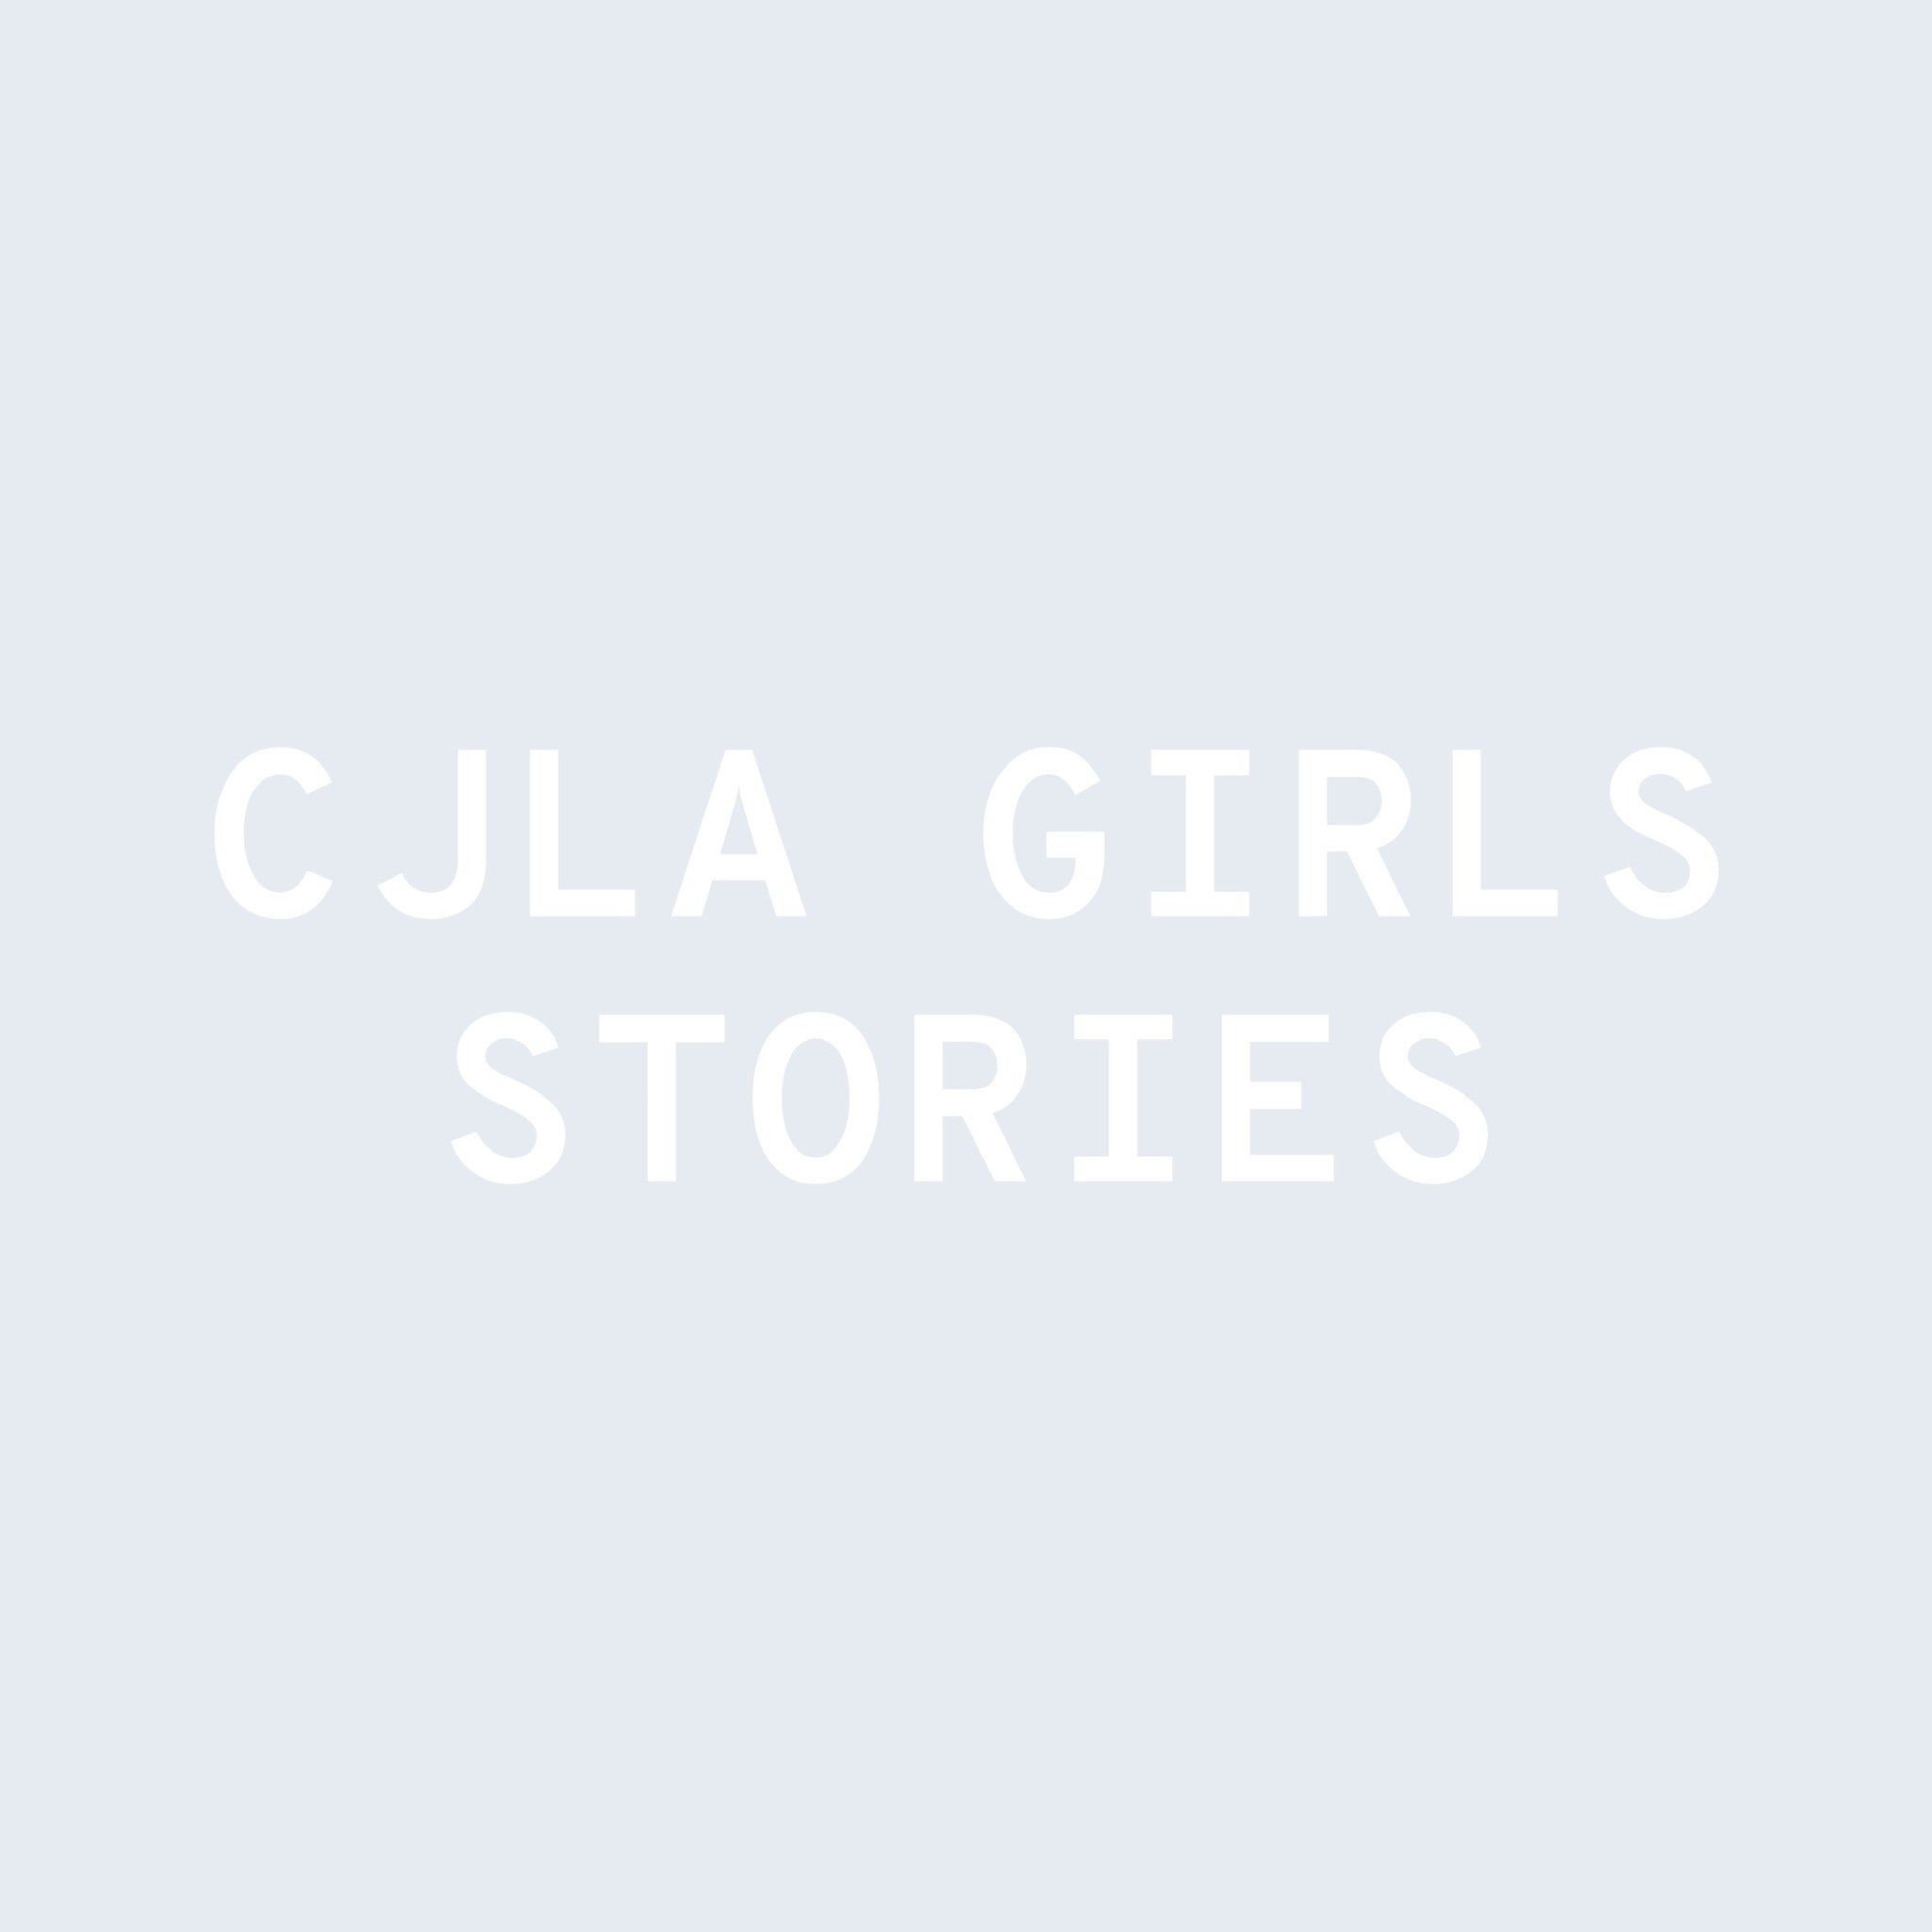 CJLA Girls Stories: Meghan Beltran